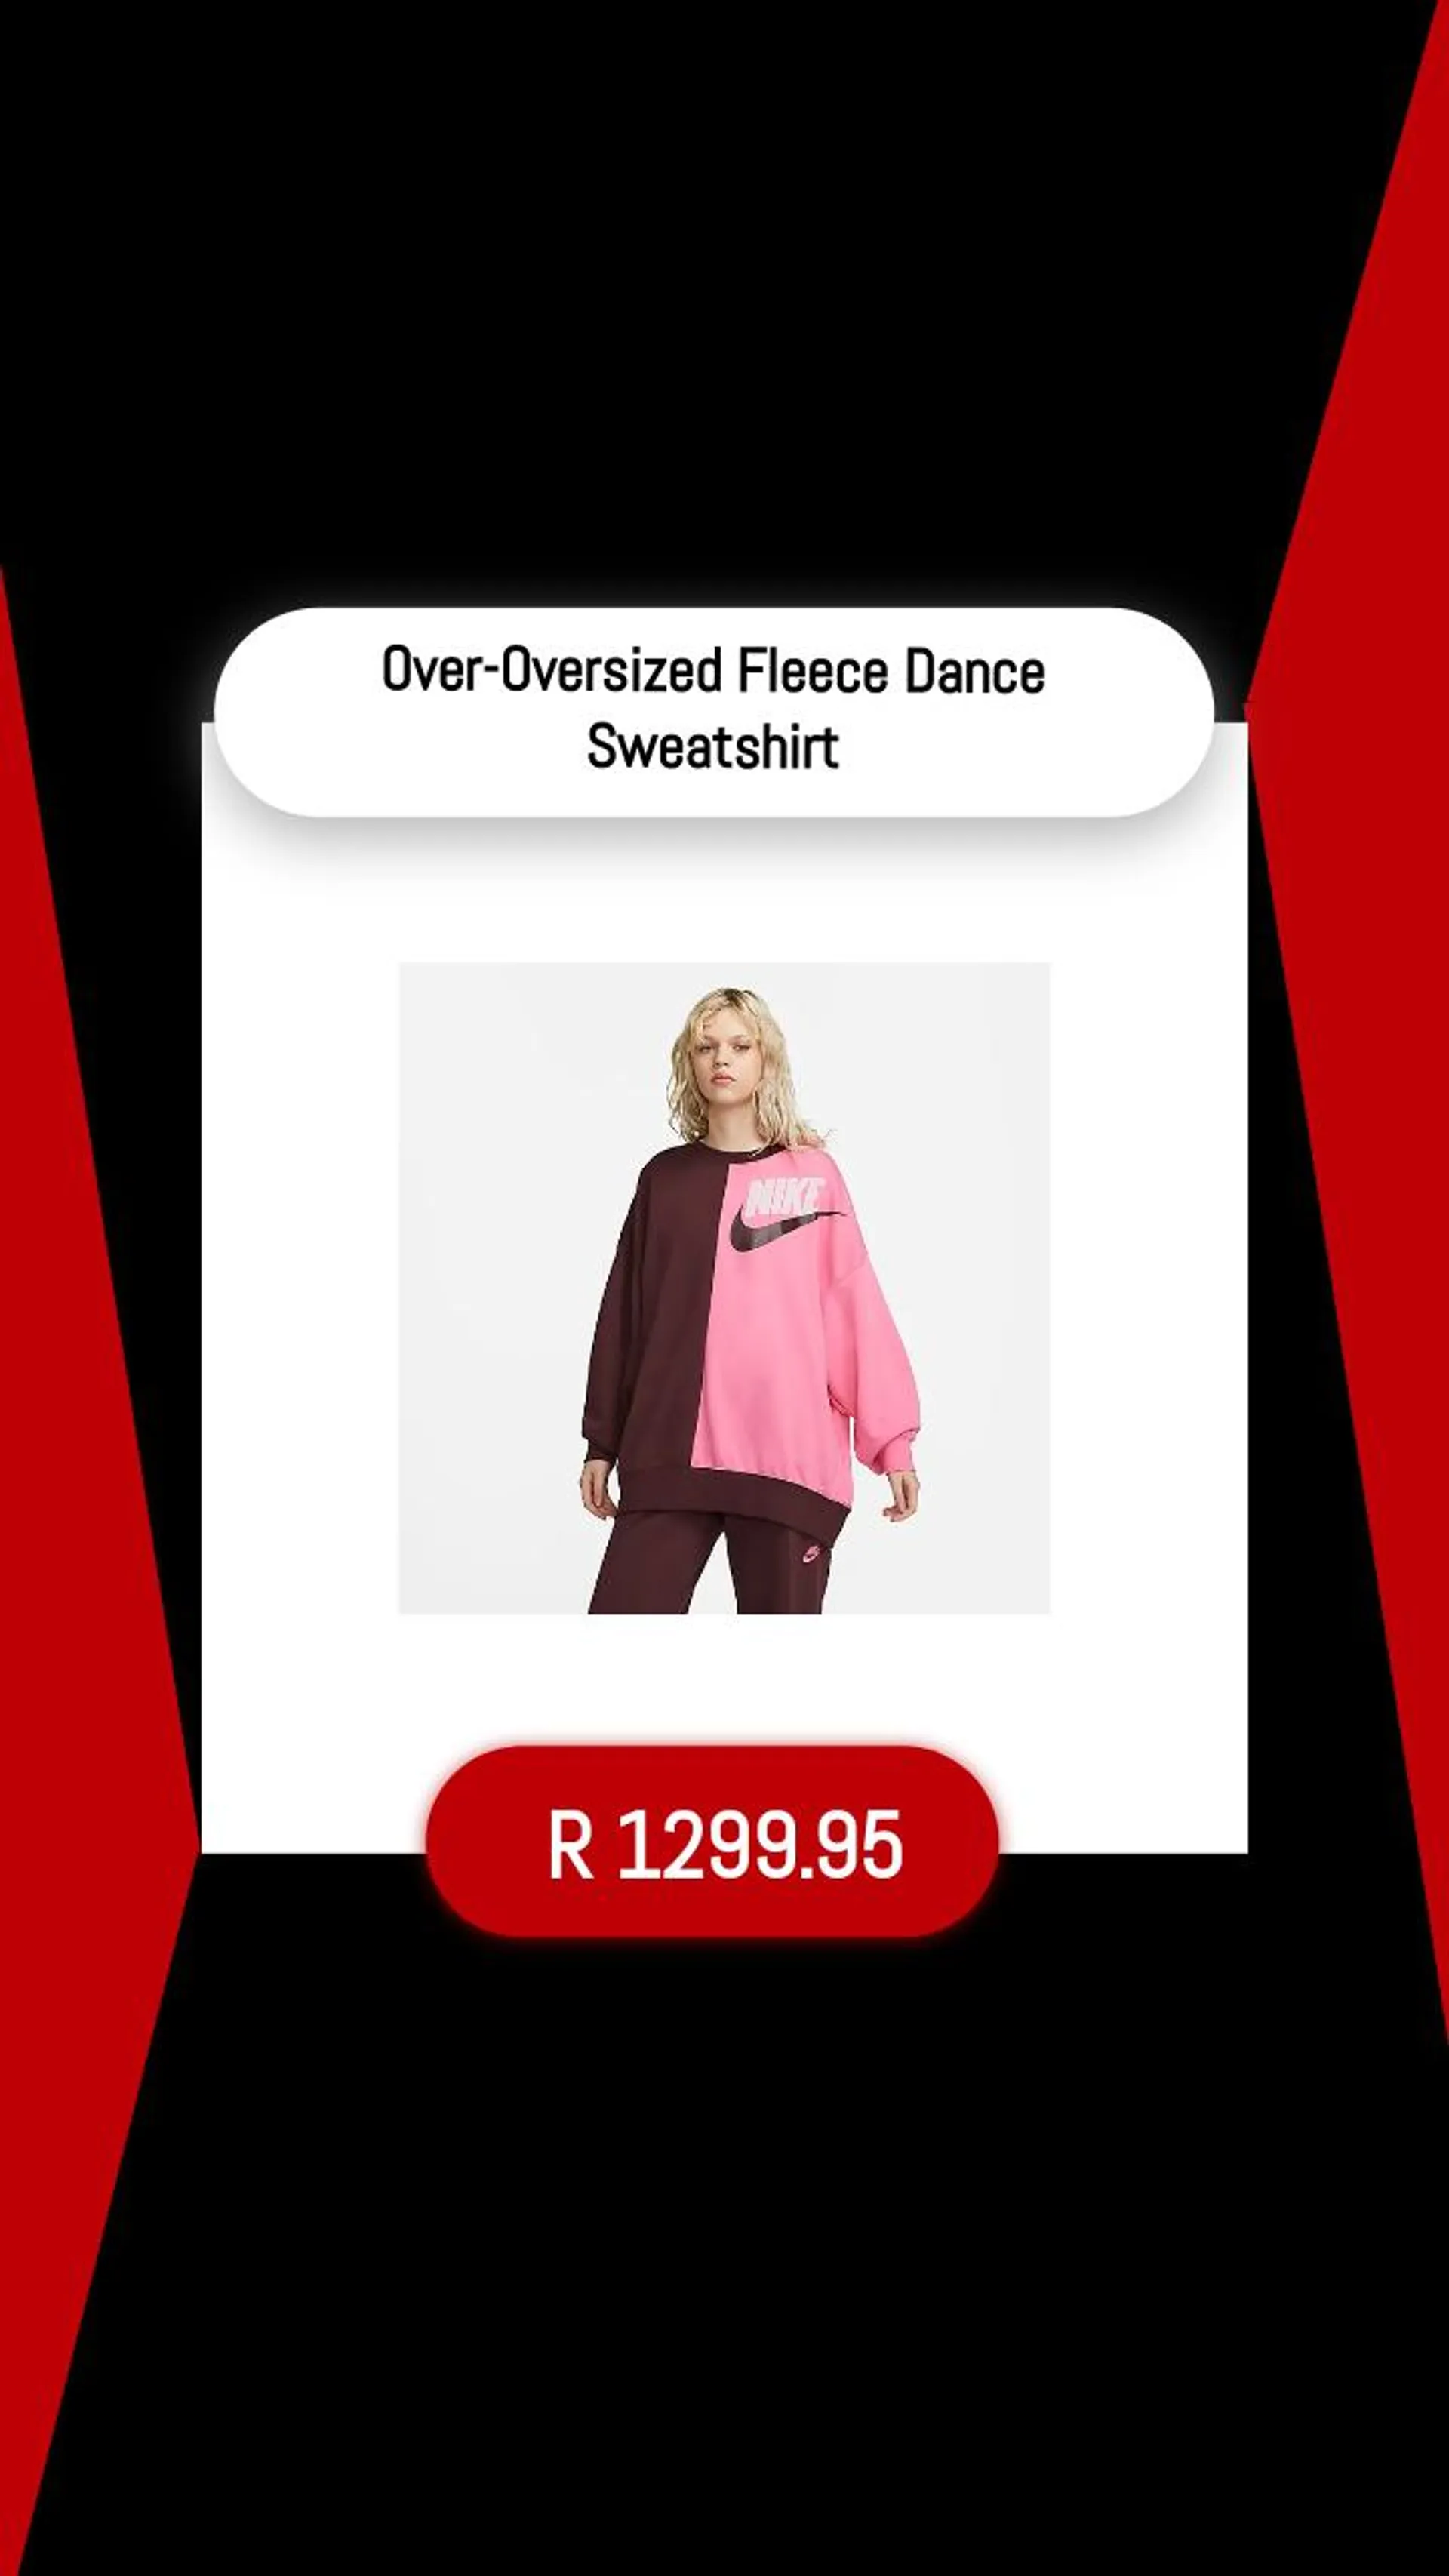 Over-Oversized Fleece Dance Sweatshirt